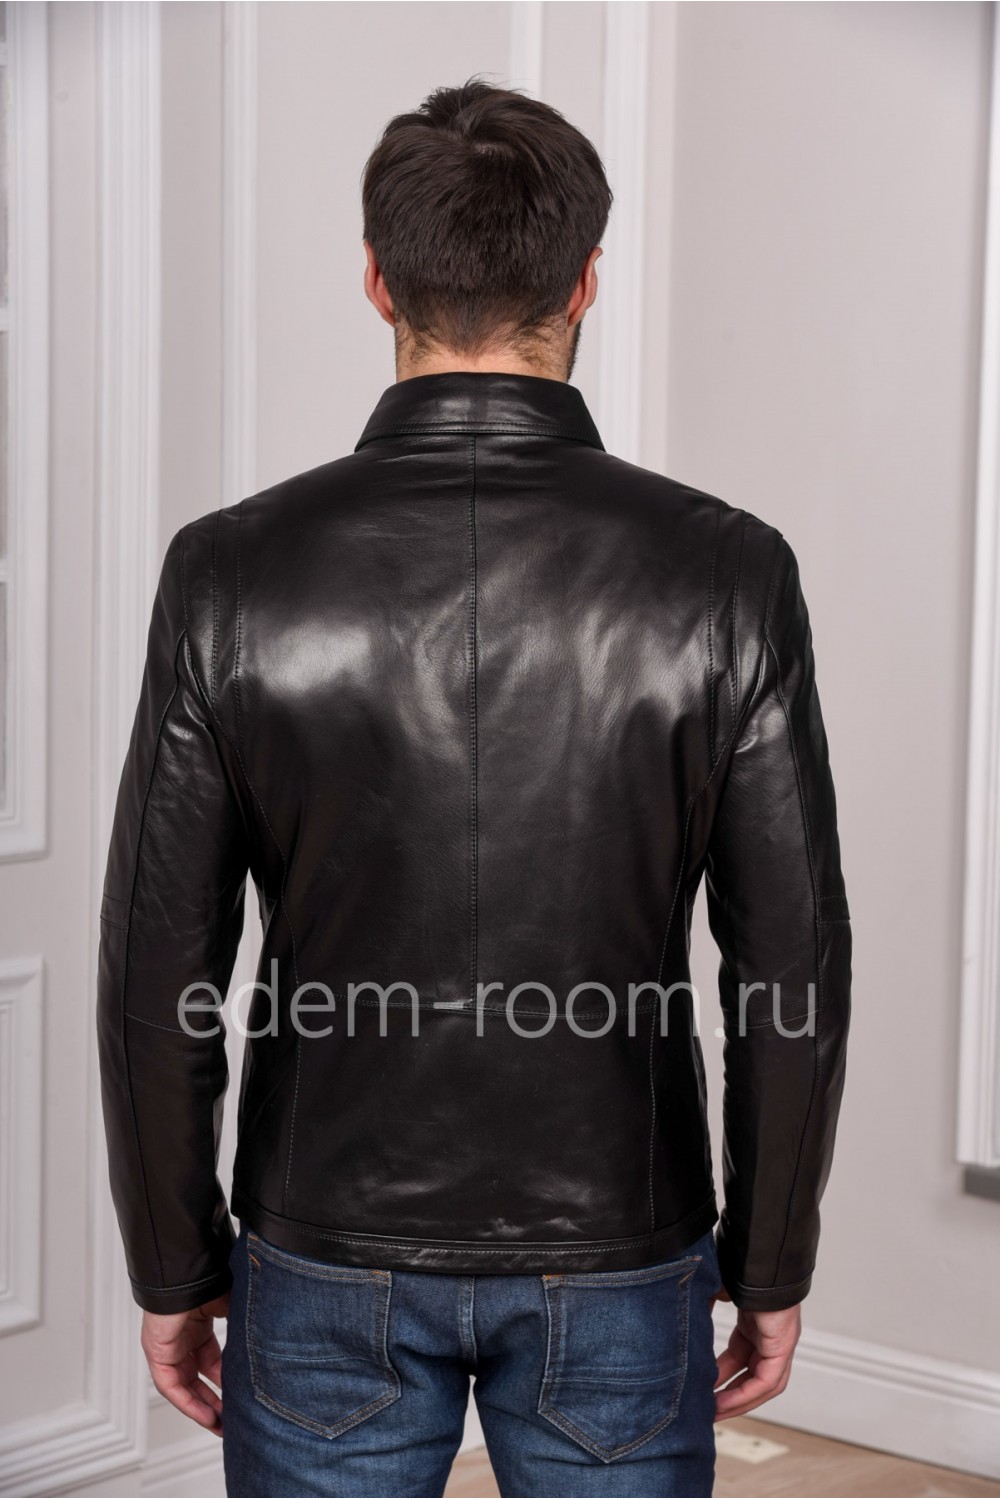 Мужская куртка кожаная из натуральной кожи, черная и молодежная